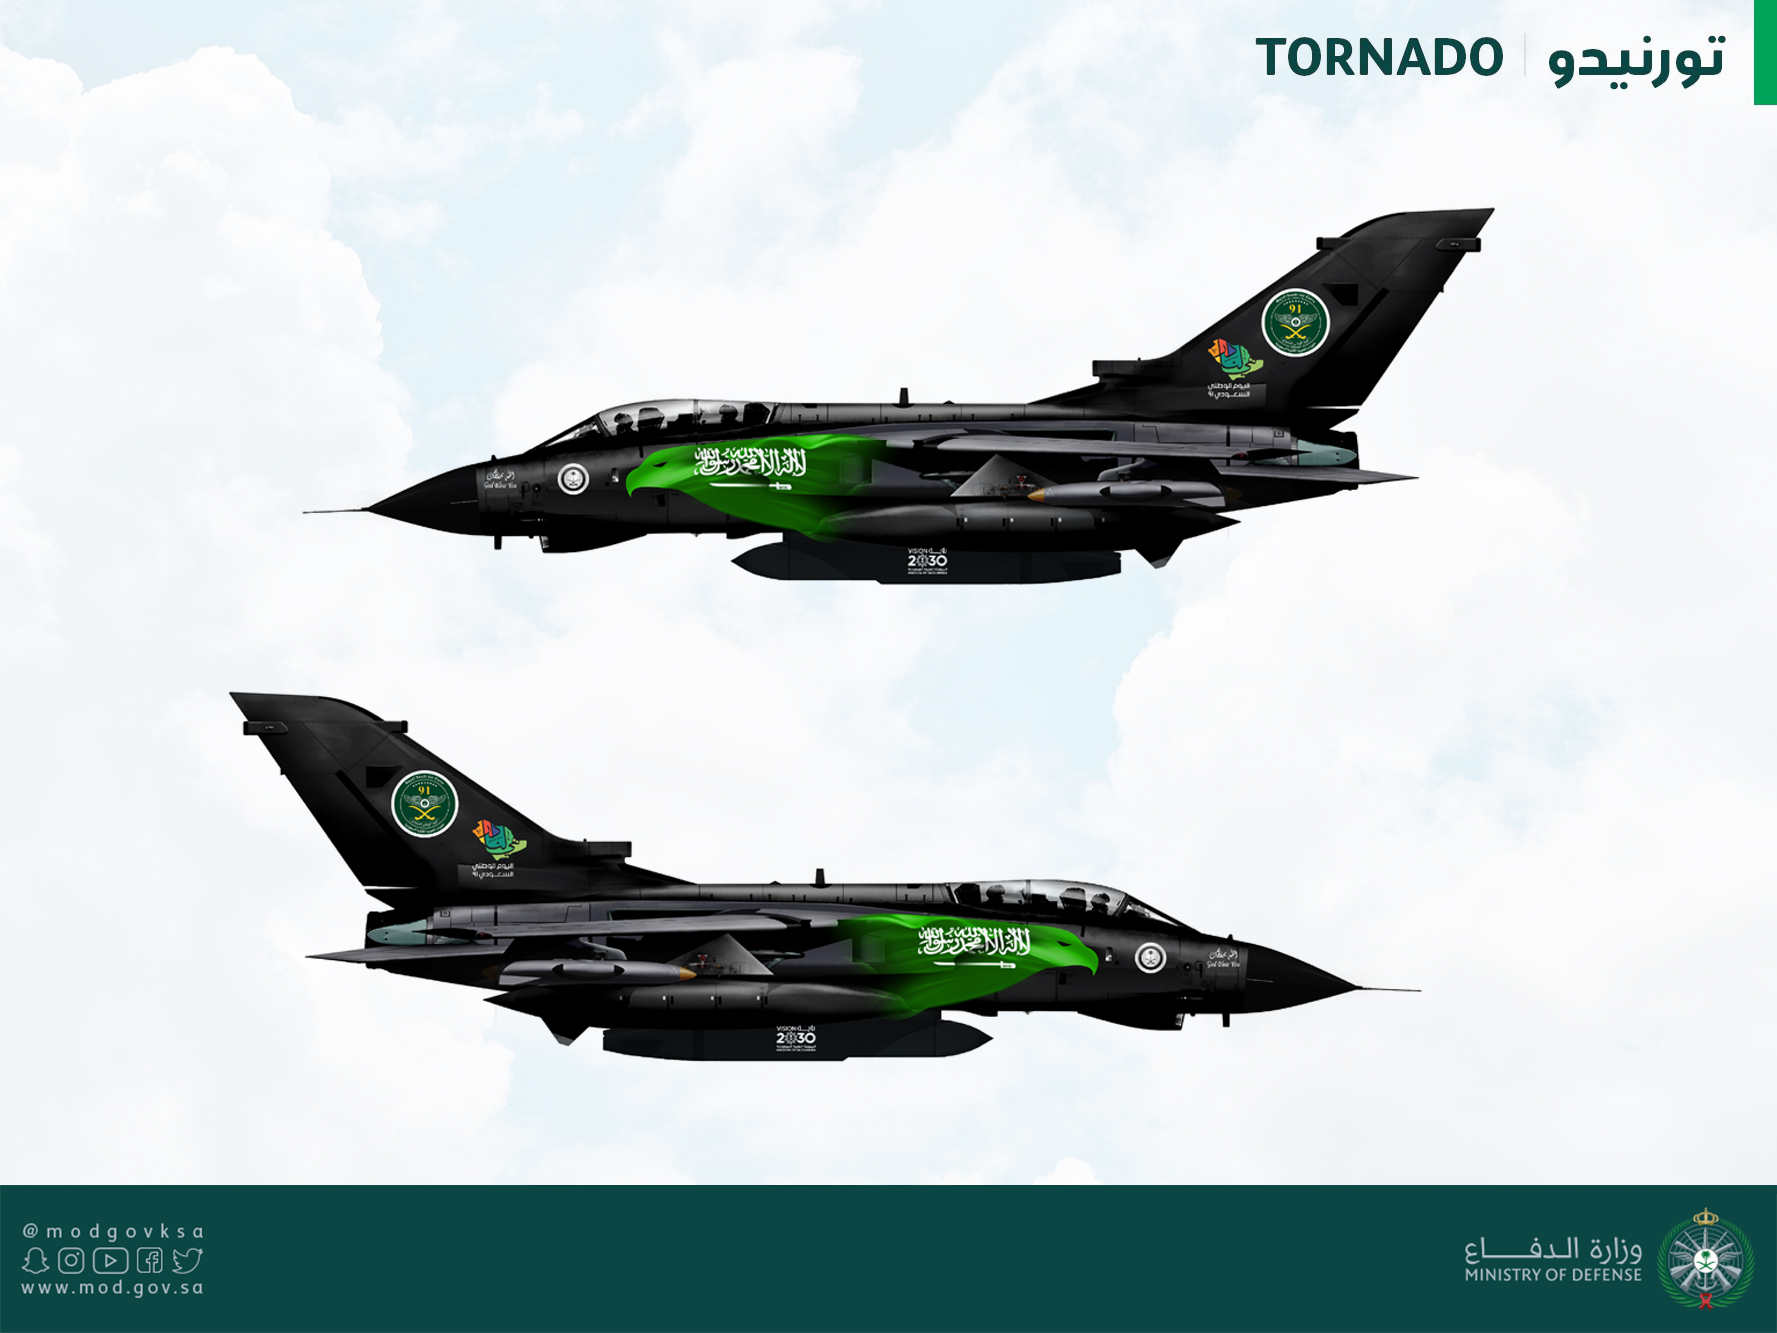 FUERZA AEREA DE ARABIA SAUDITA - Página 2 Saudi_Arabia_RSAF_special_mks_Tornado_small